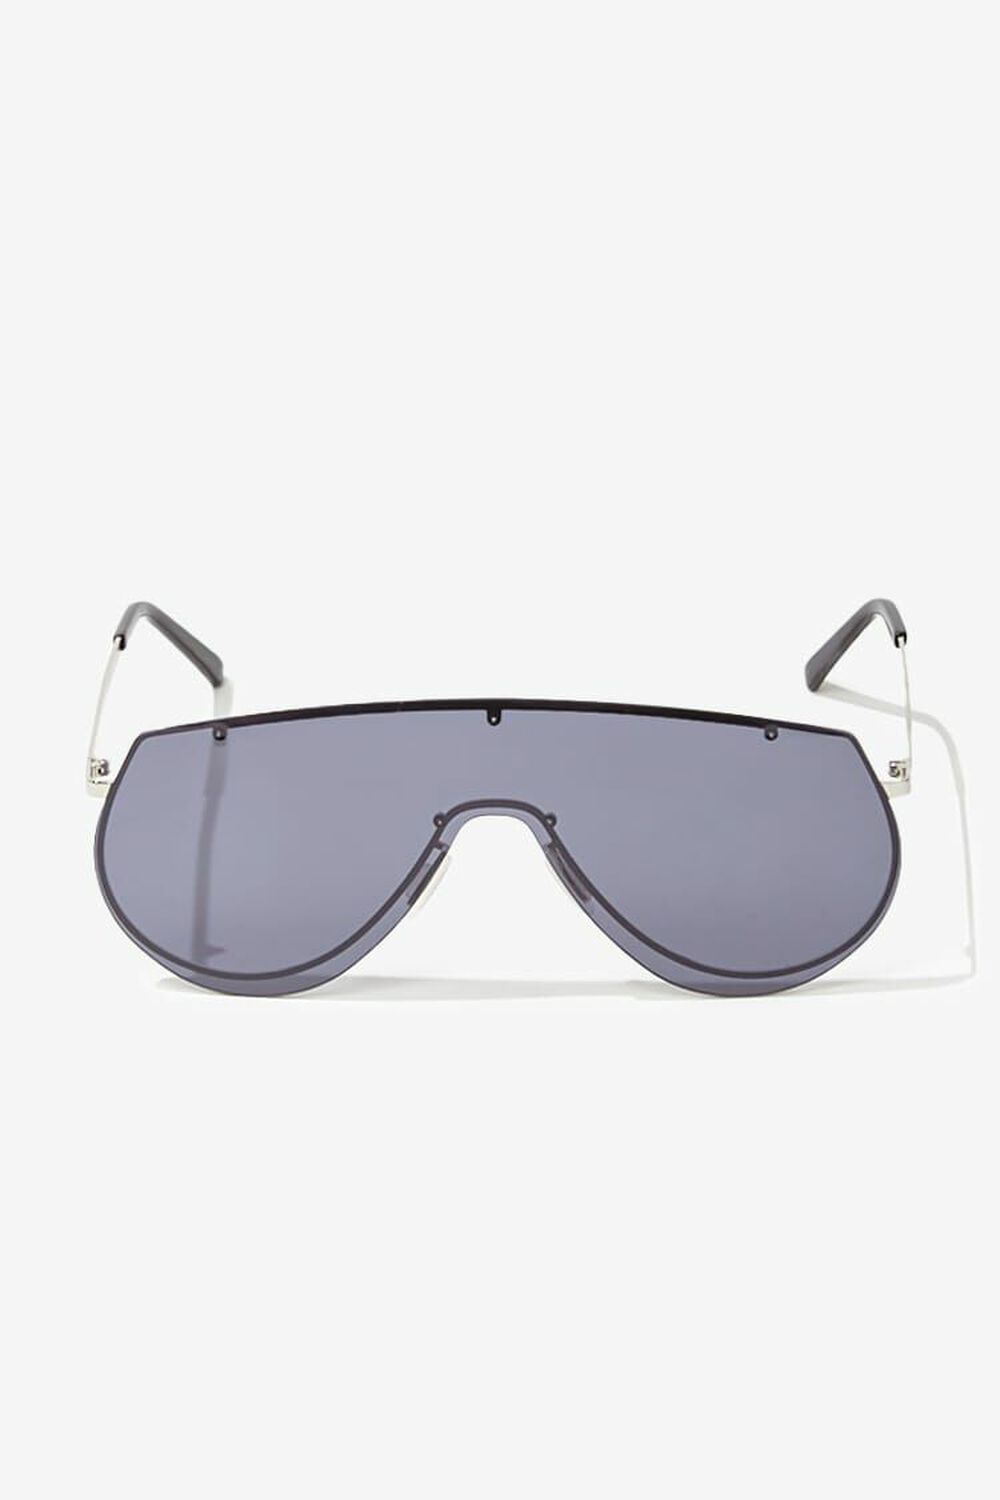 SILVER/BLACK Premium Round Tinted Sunglasses, image 1